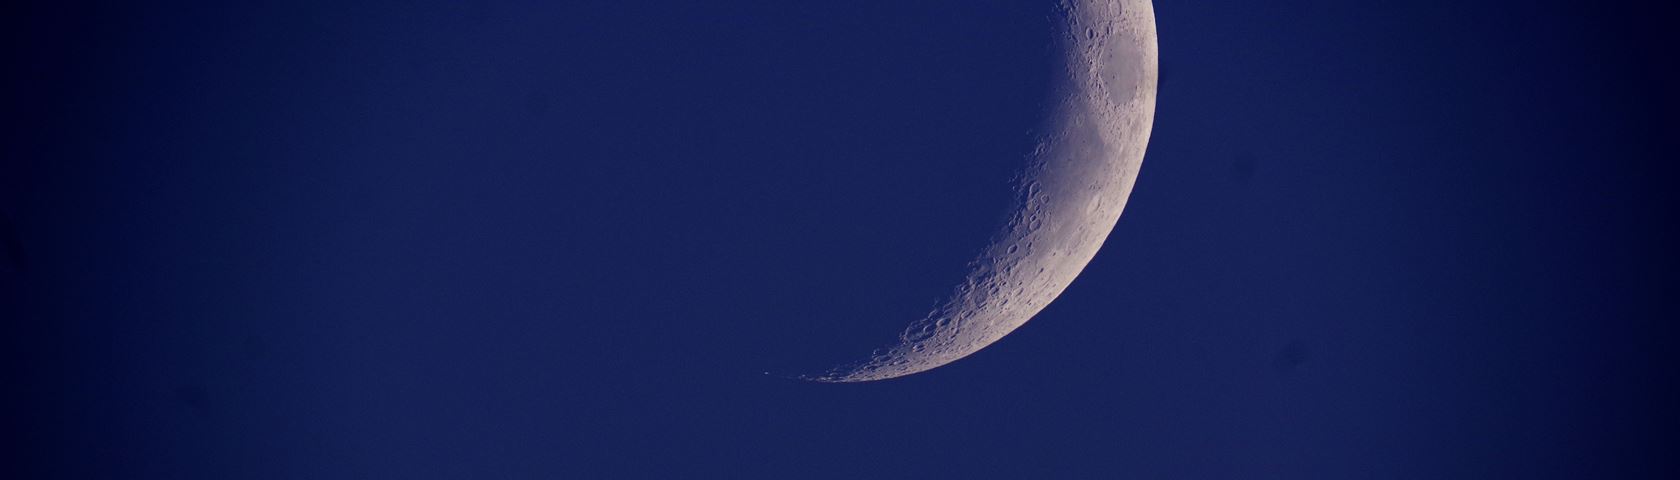 moon dusk